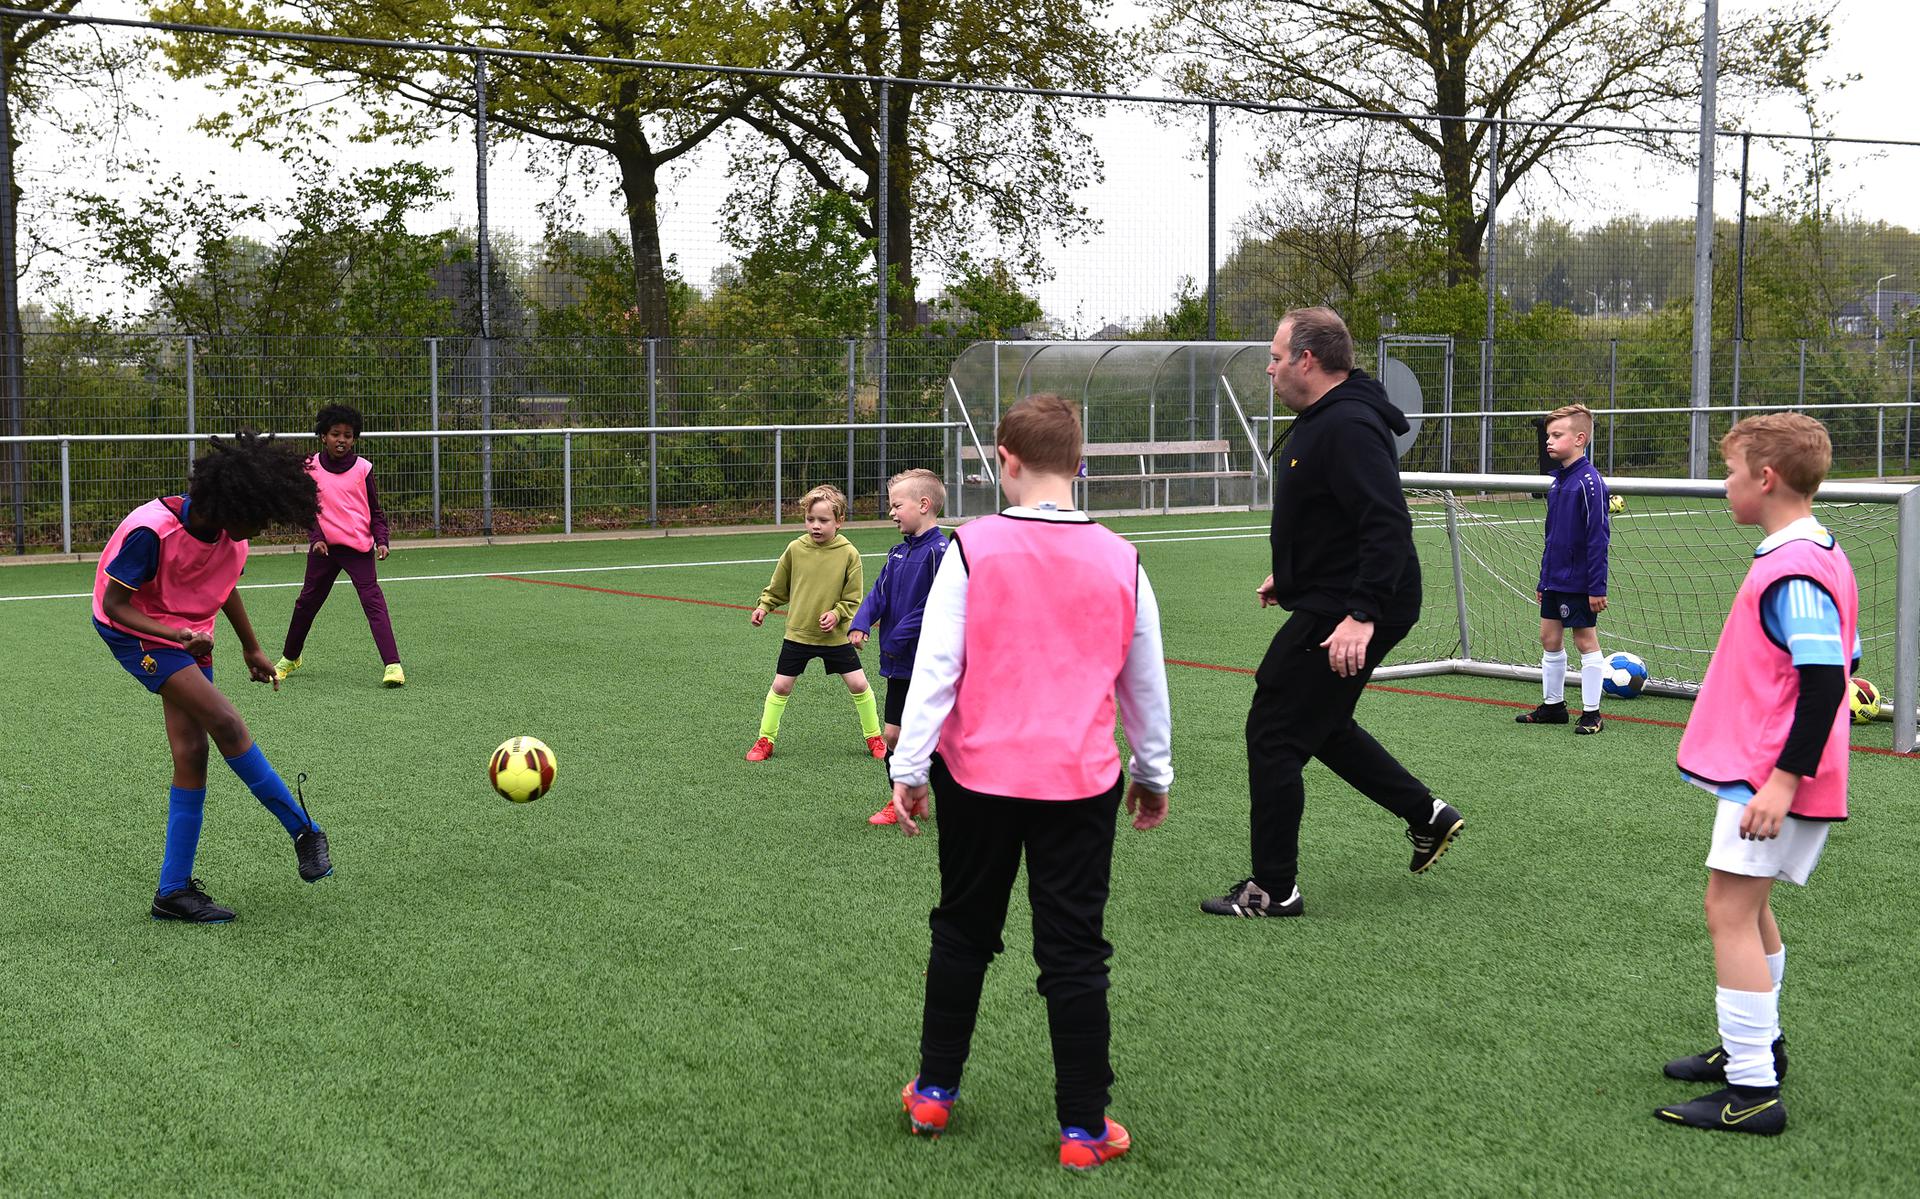 De doelstelling van de Jeroen Dekker is om aan de slag te gaan met jeugd uit de regio om de voetbalkwaliteiten te verbeteren.